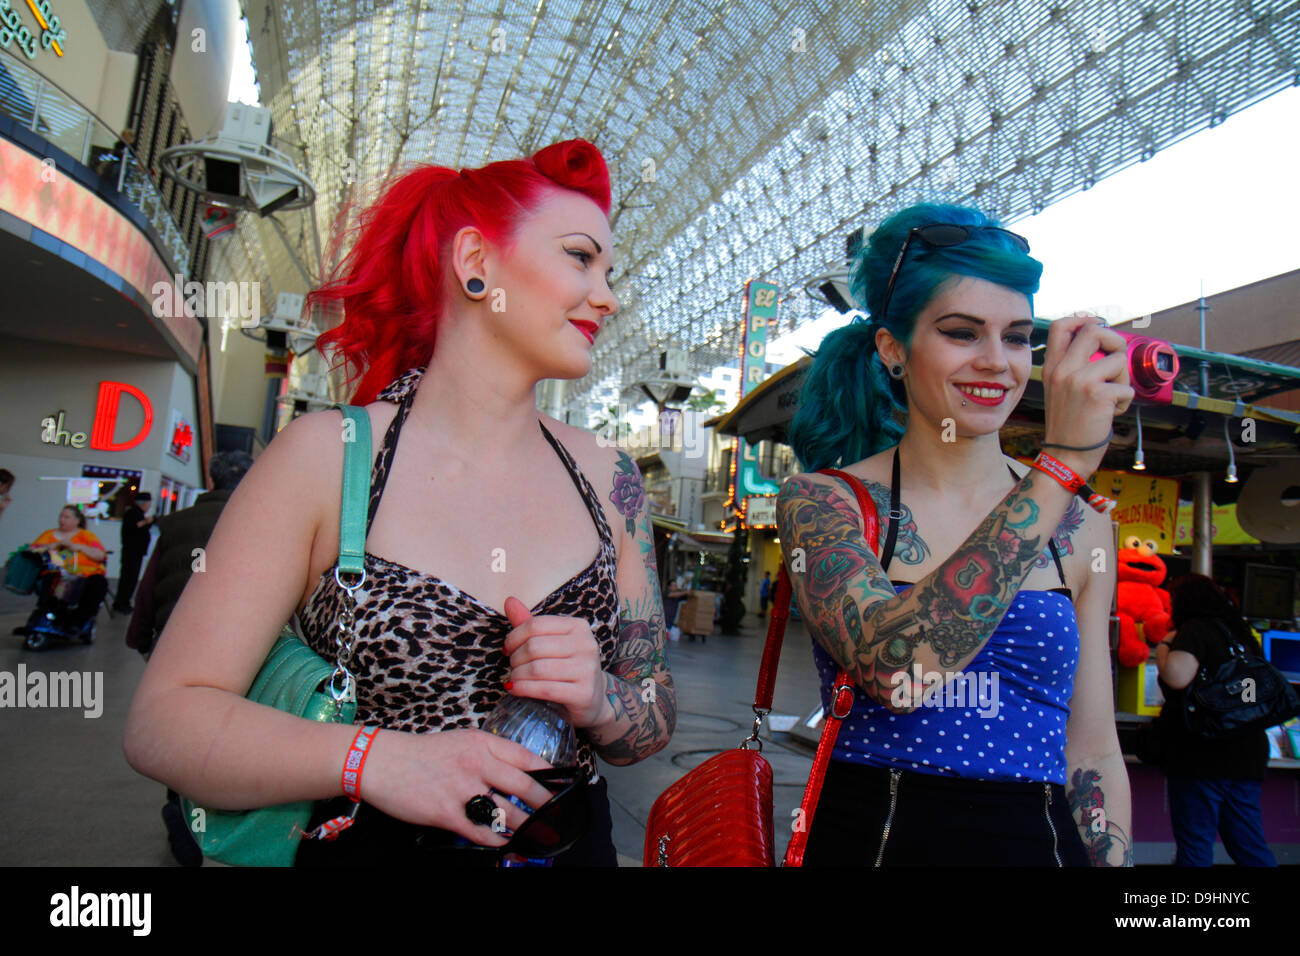 Las Vegas Nevada, Downtown, Fremont Street Experience, Fußgängerzone, weibliche Frauen, gefärbte Haare, rot, blau, Tattoos, Retro-Look, Touristen, Kamera, digital, t Stockfoto